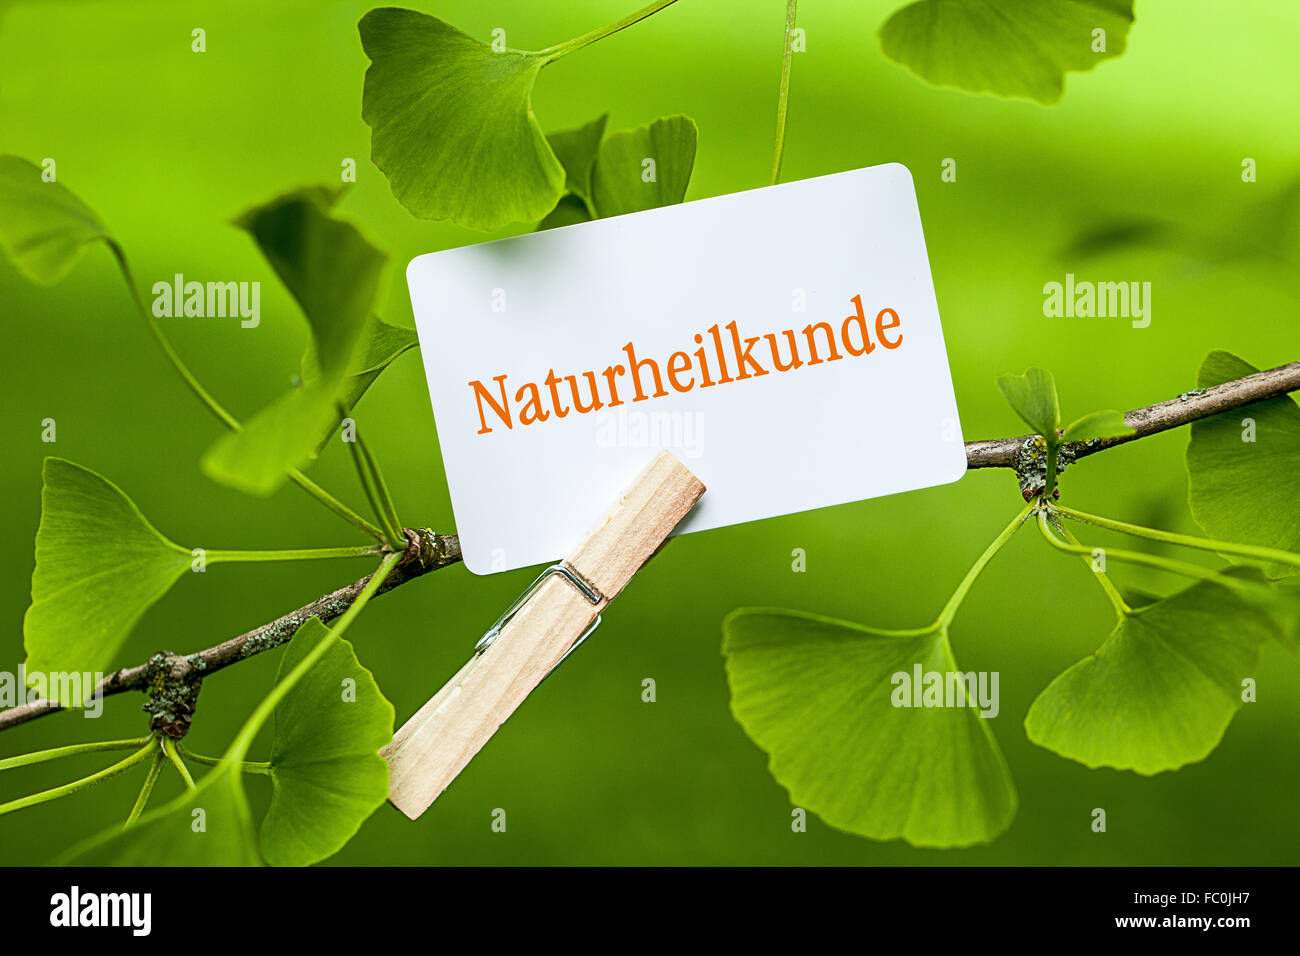 La palabra "Naturheilkunde en un árbol de ginkgo Foto de stock